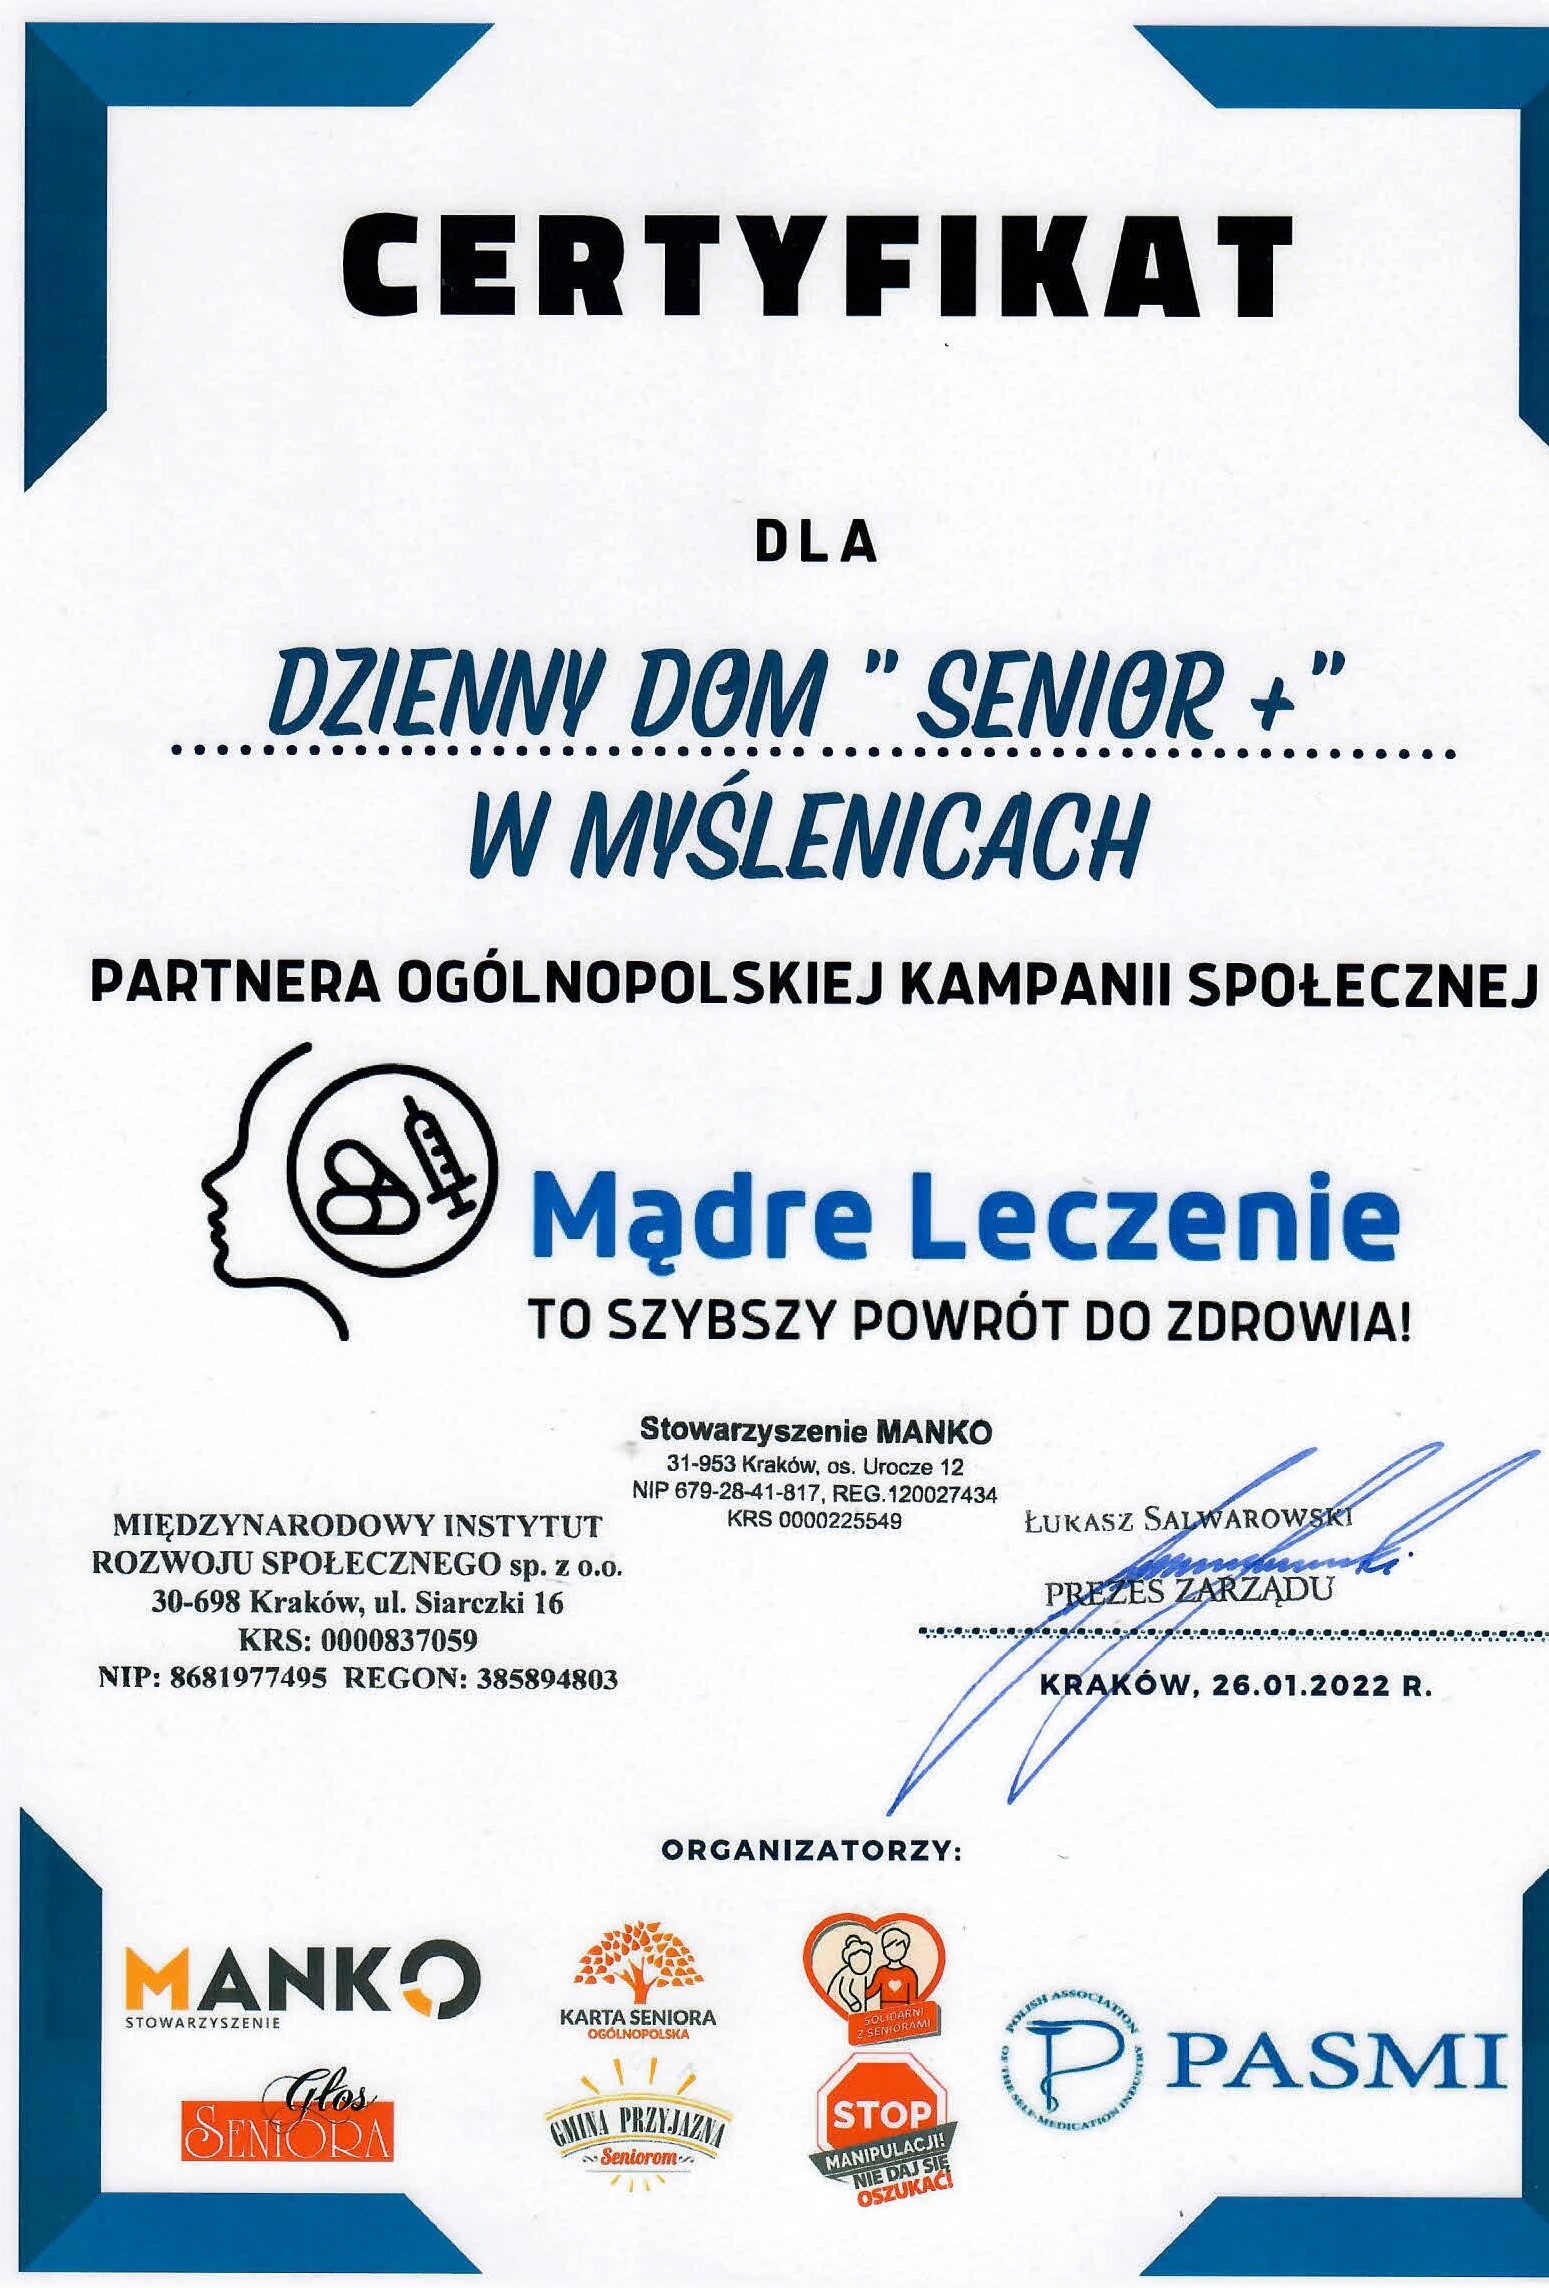 Certyfikat dla DDS Senior +